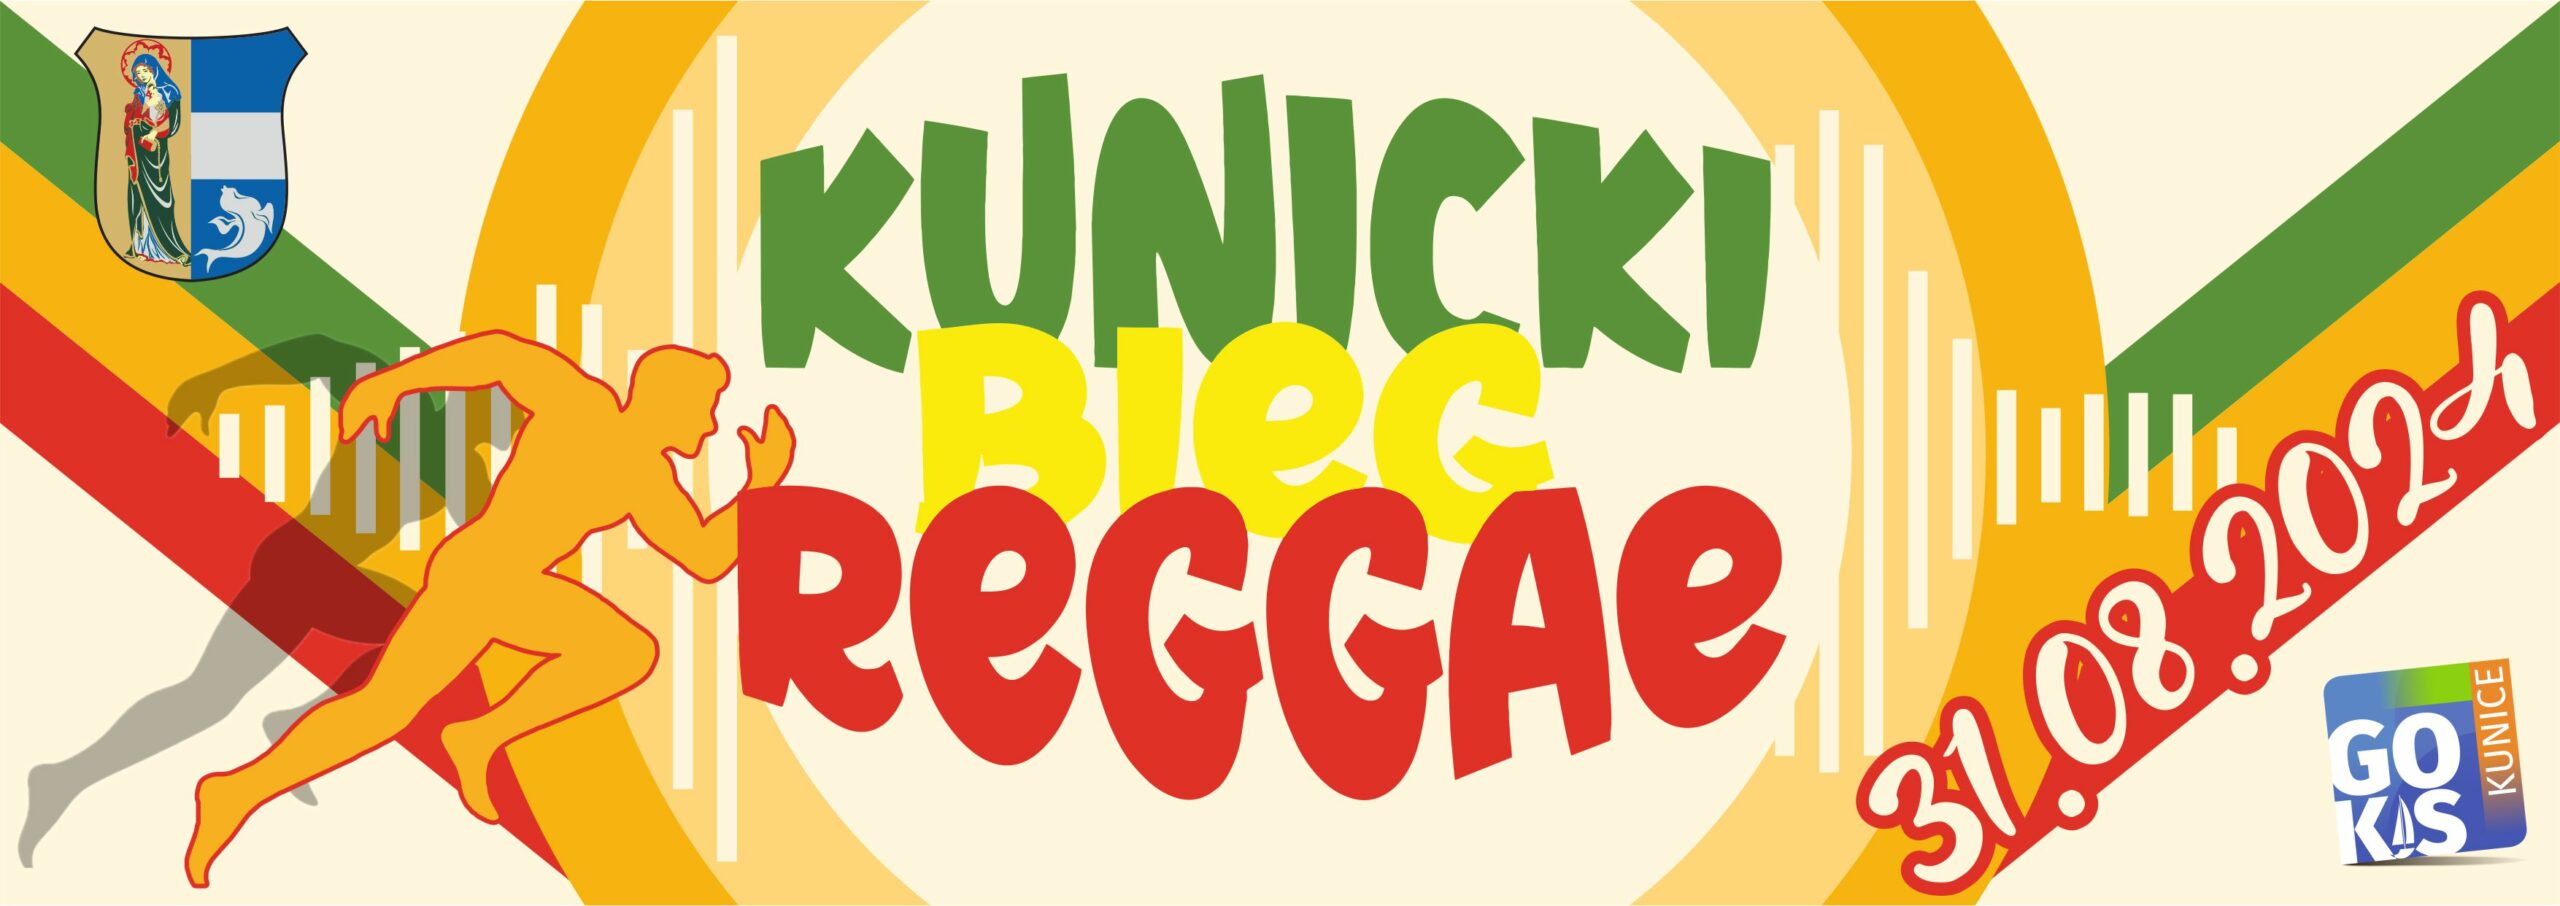 https://www.gokis-kunice.pl/imprezy/kunicki-bieg-reggae/